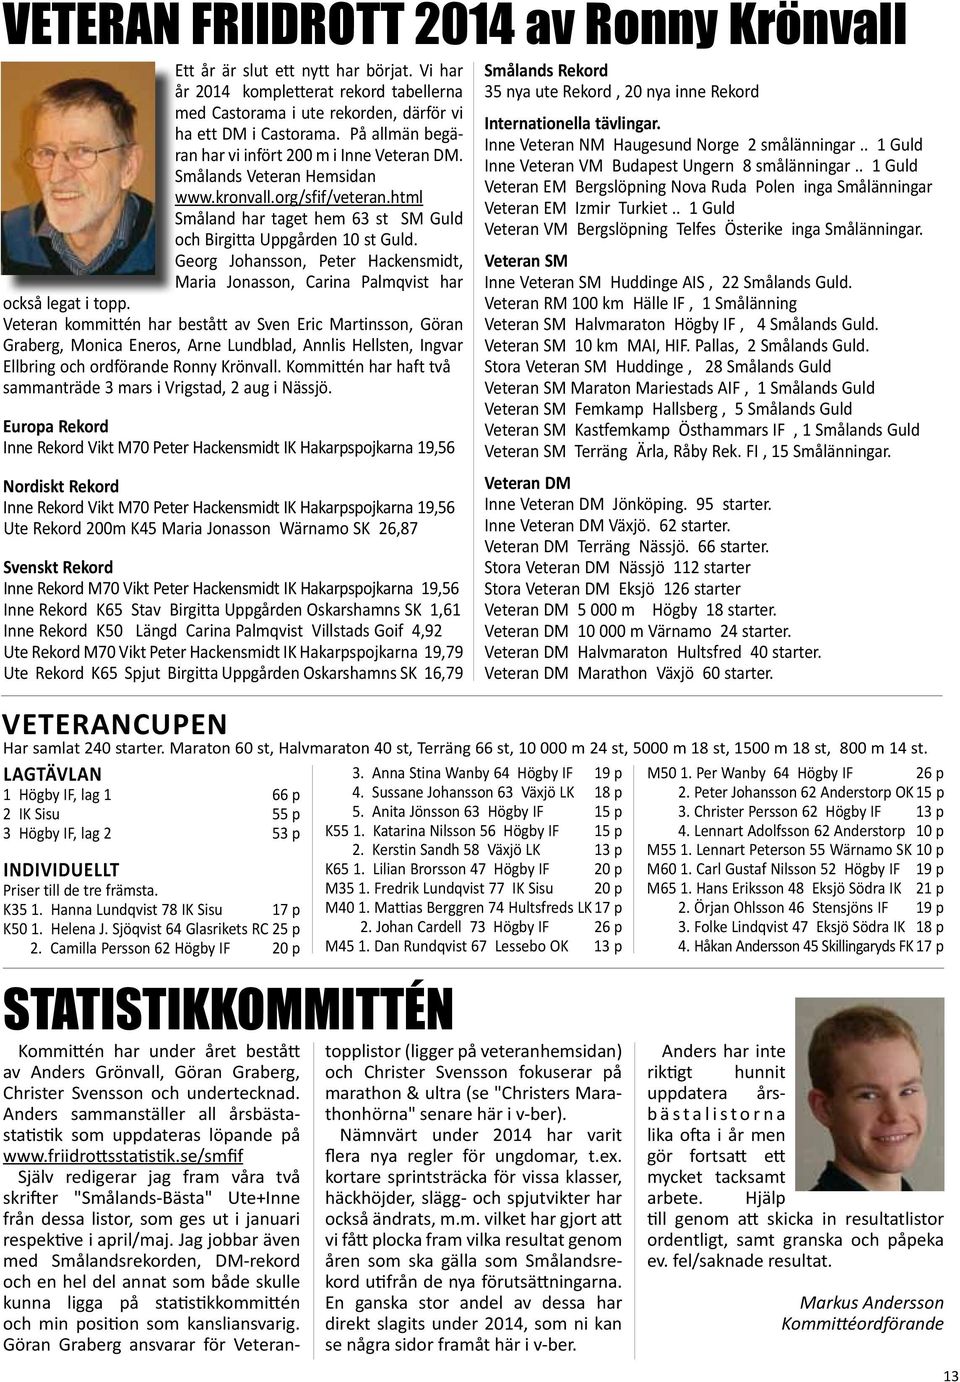 Georg Johansson, Peter Hackensmidt, Maria Jonasson, Carina Palmqvist har också legat i topp.